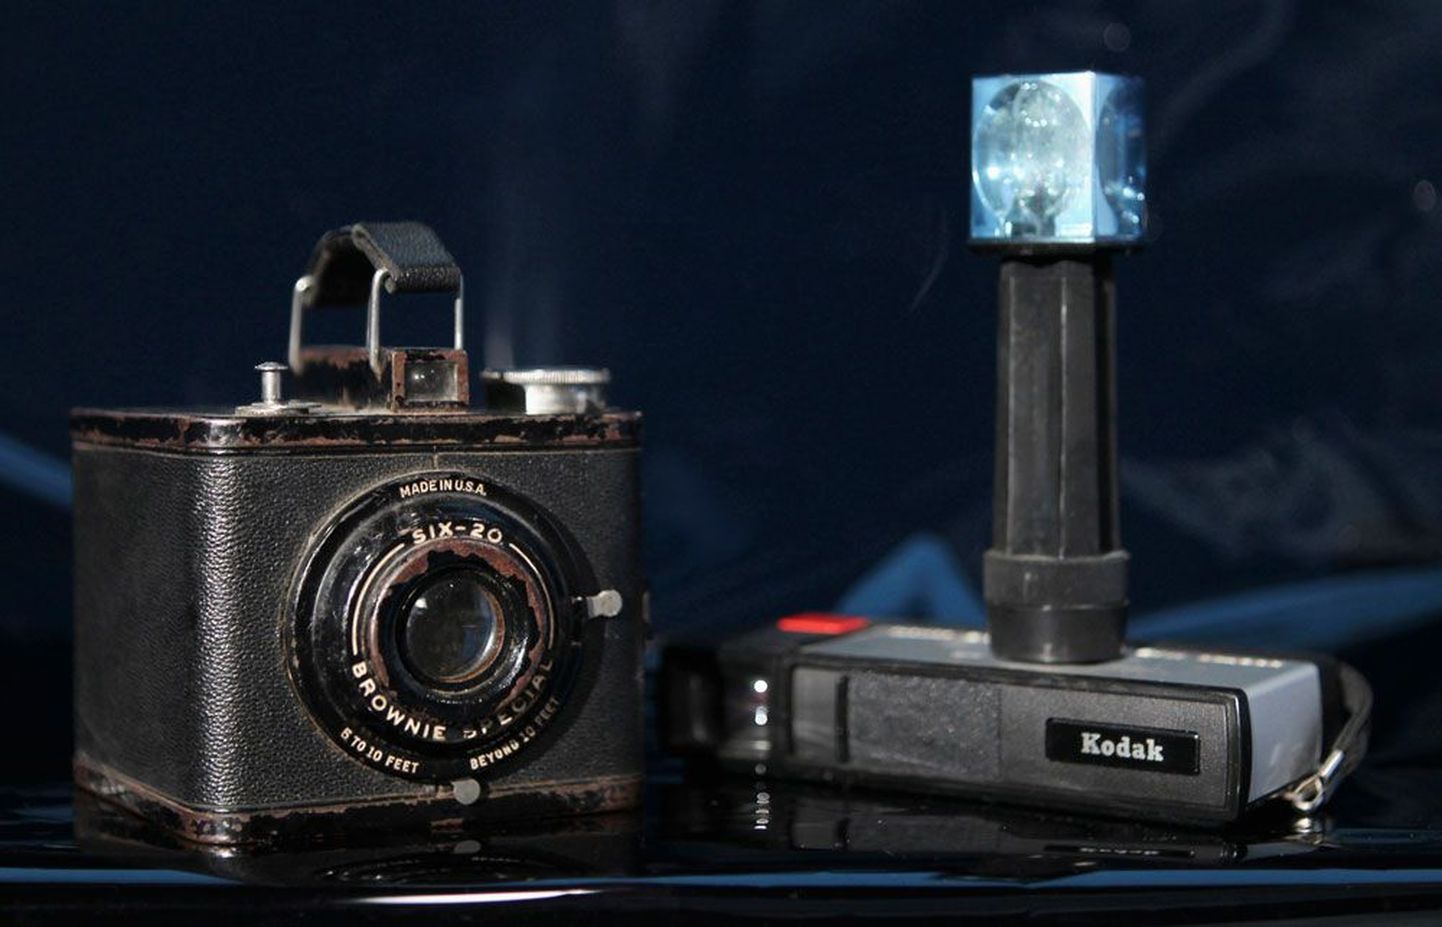 Kaks legendaarset Kodaki kaamerat – Brownie Special Six-20 ja Pocket Instamatic 20.